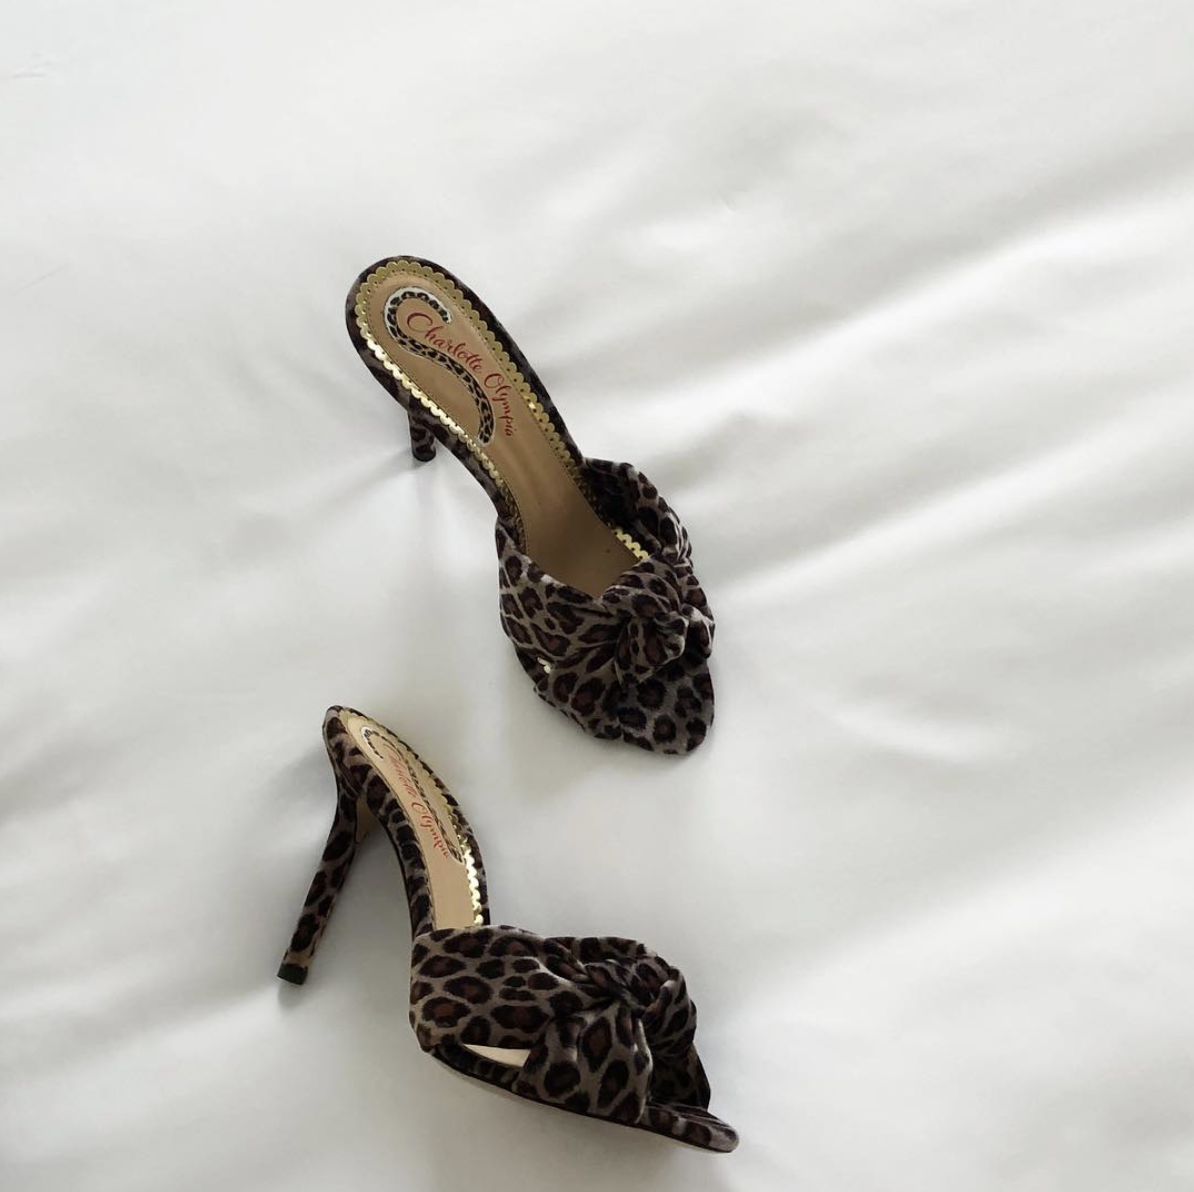 leopard skin shoes heels